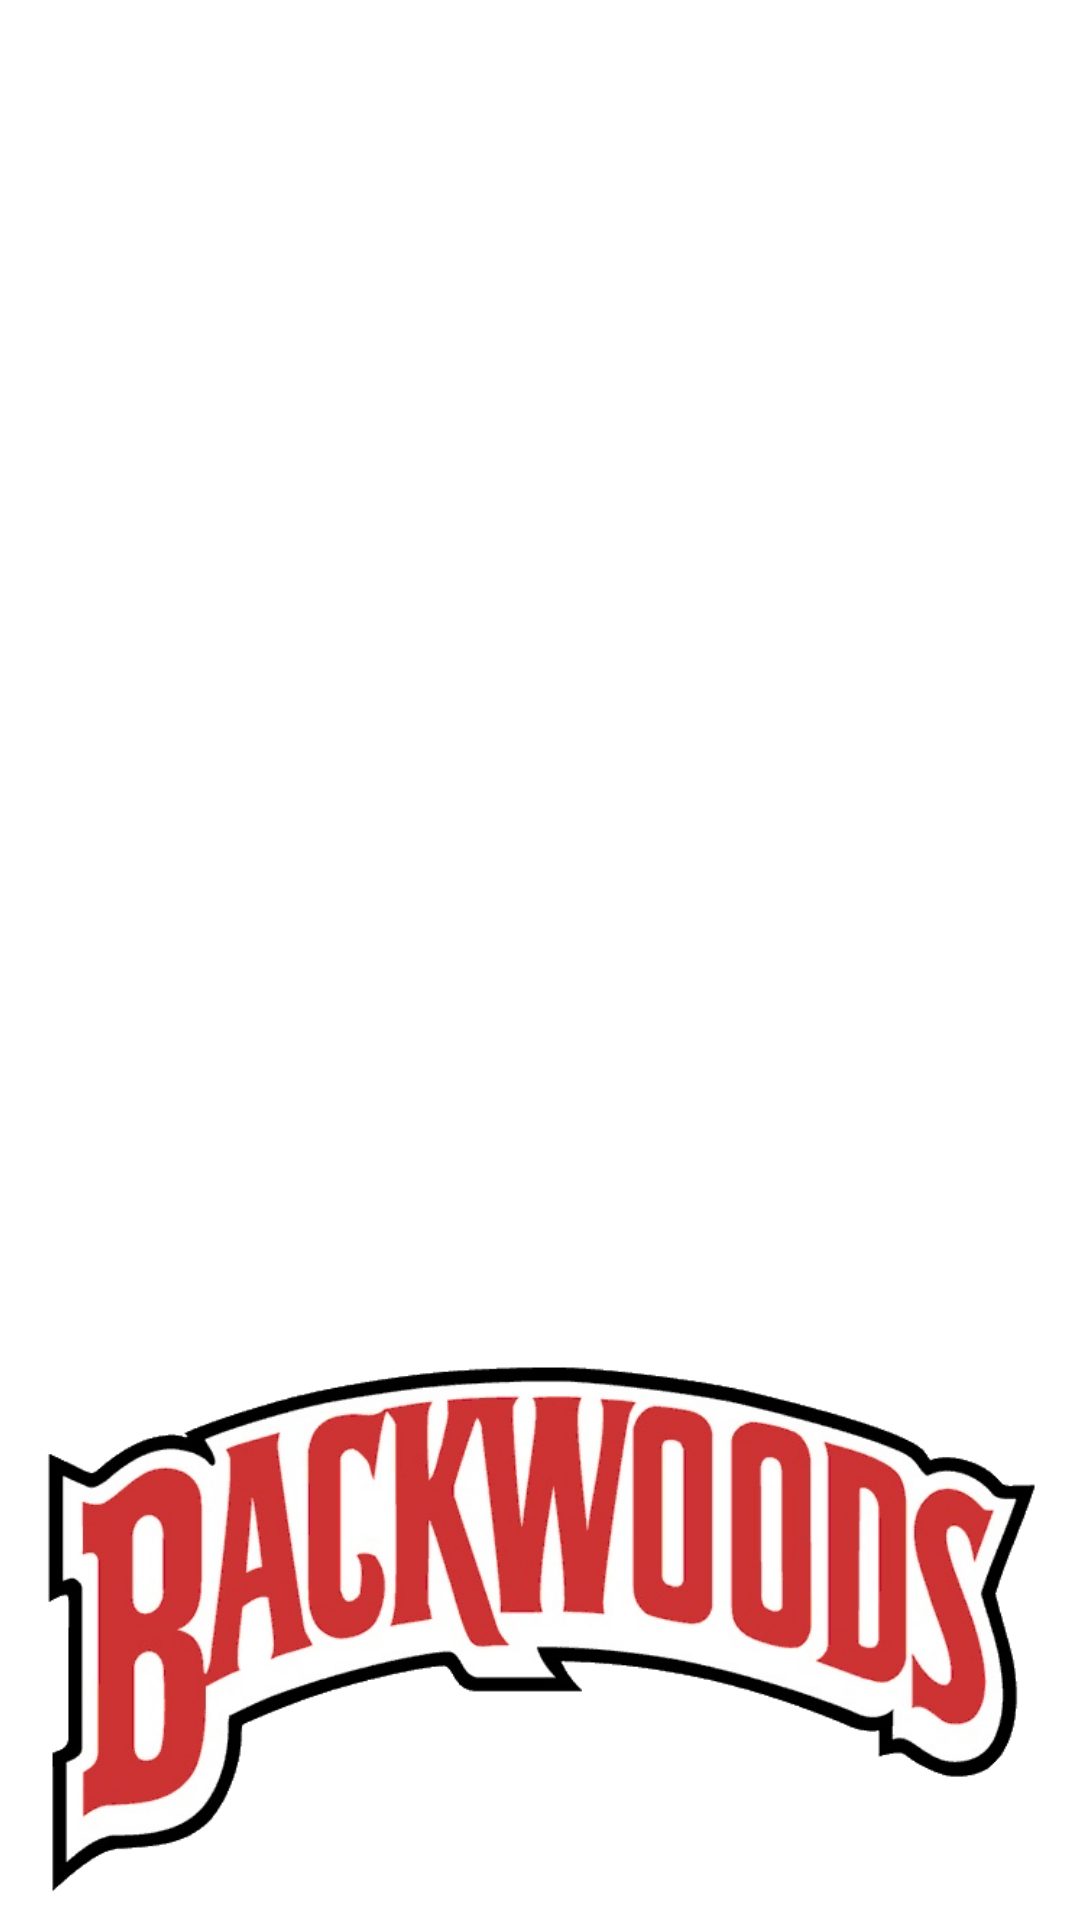 Backwoods Logo - Backwood Logo : PhantomForSnapchat